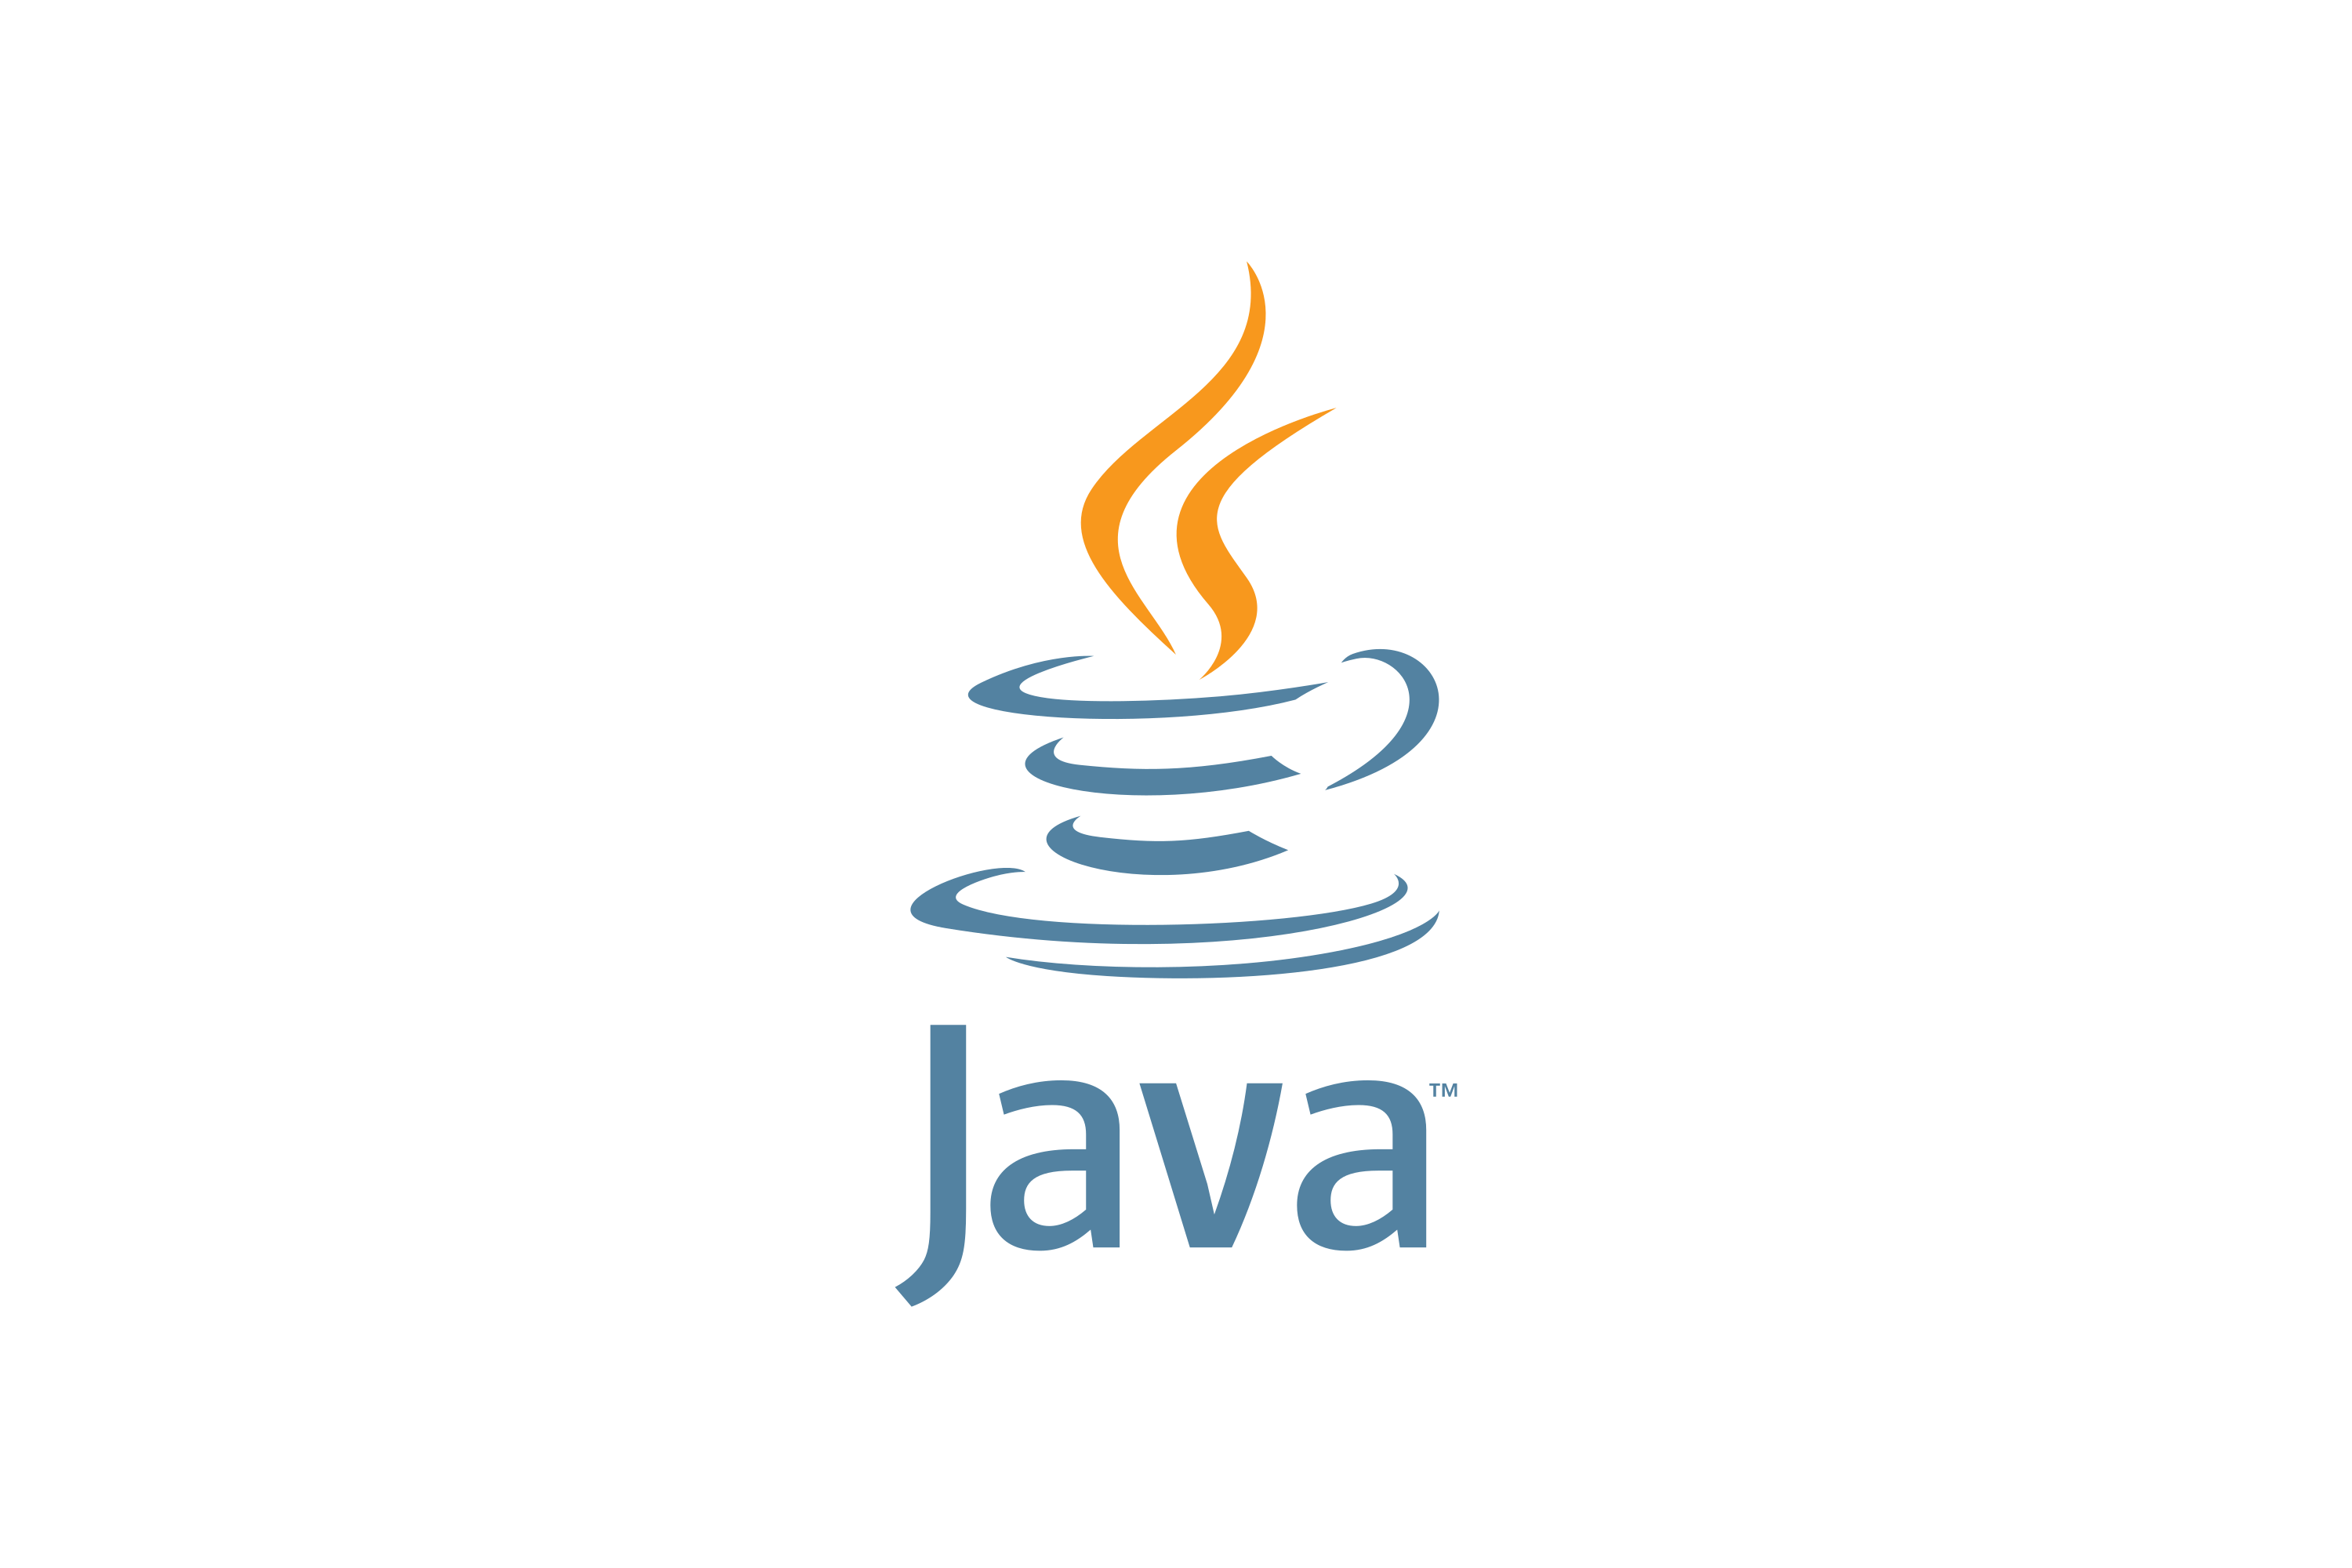 Jvaязык программирования логотип. Иконка java. Java логотип. Джава язык программирования логотип. Java меньше